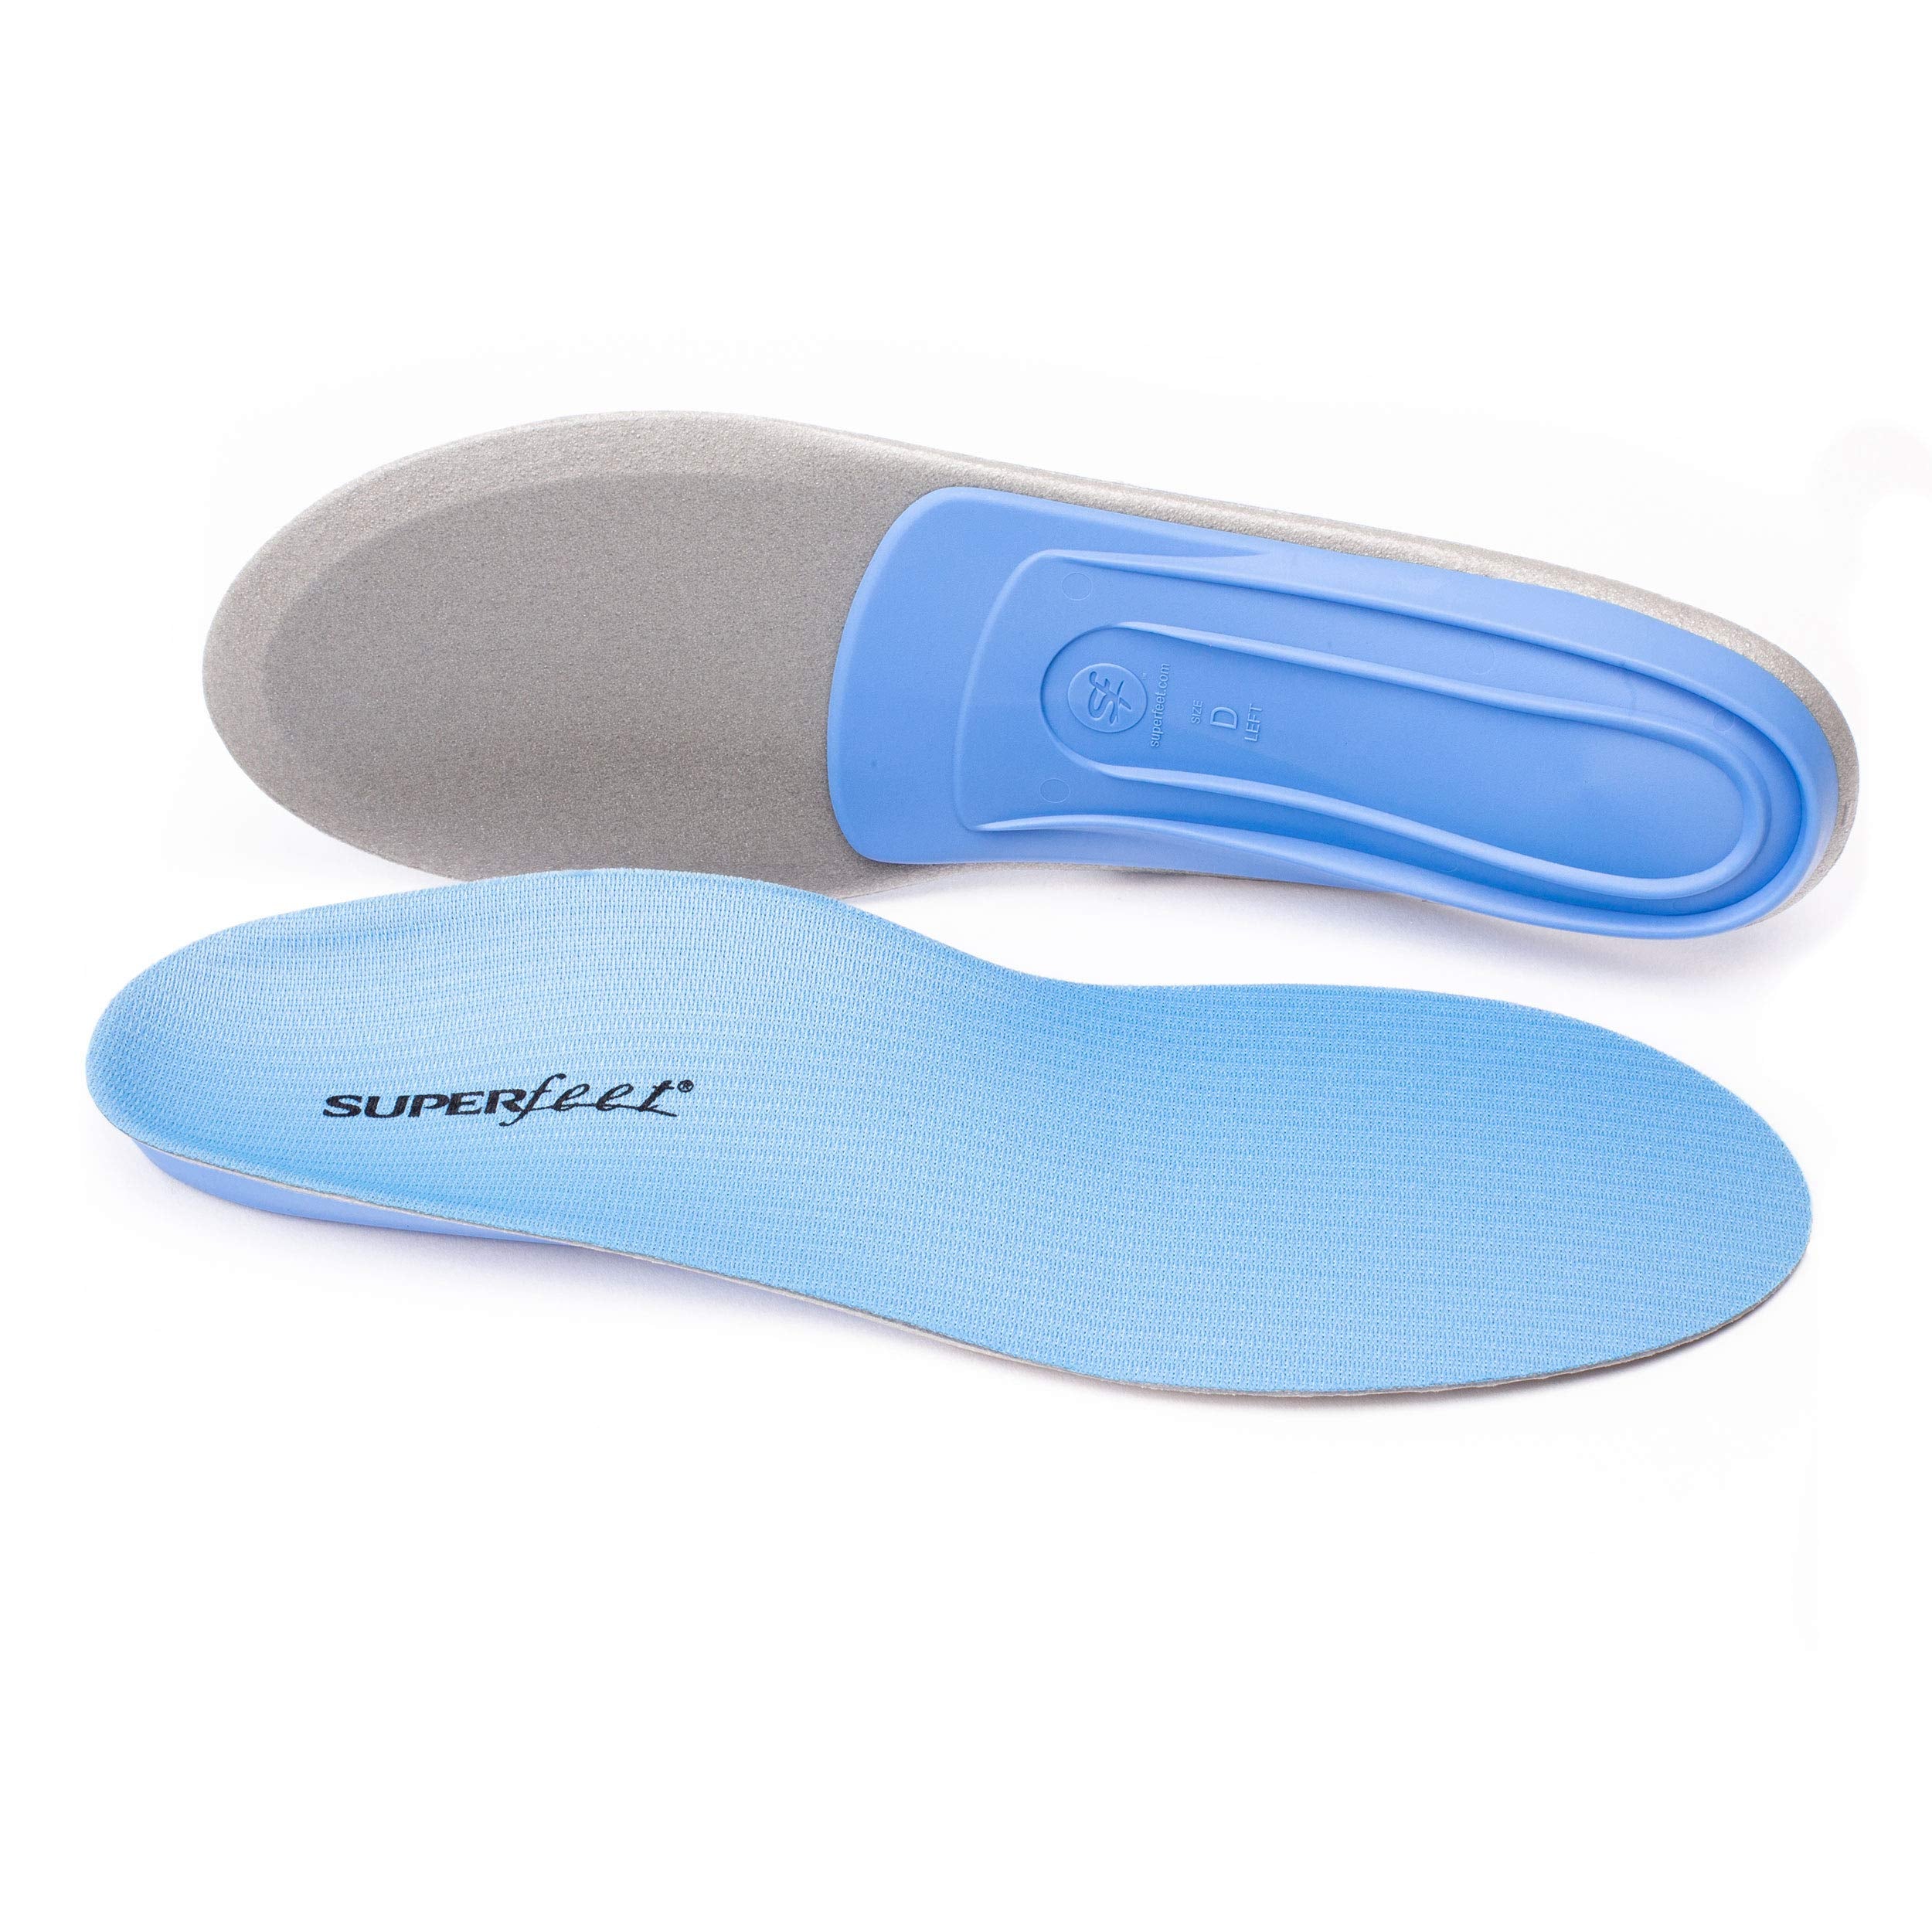 Superfeet BLUE - Foam Shoe Insoles for Medium Arch Support - Men 7.5-9 / Women 8.5-10